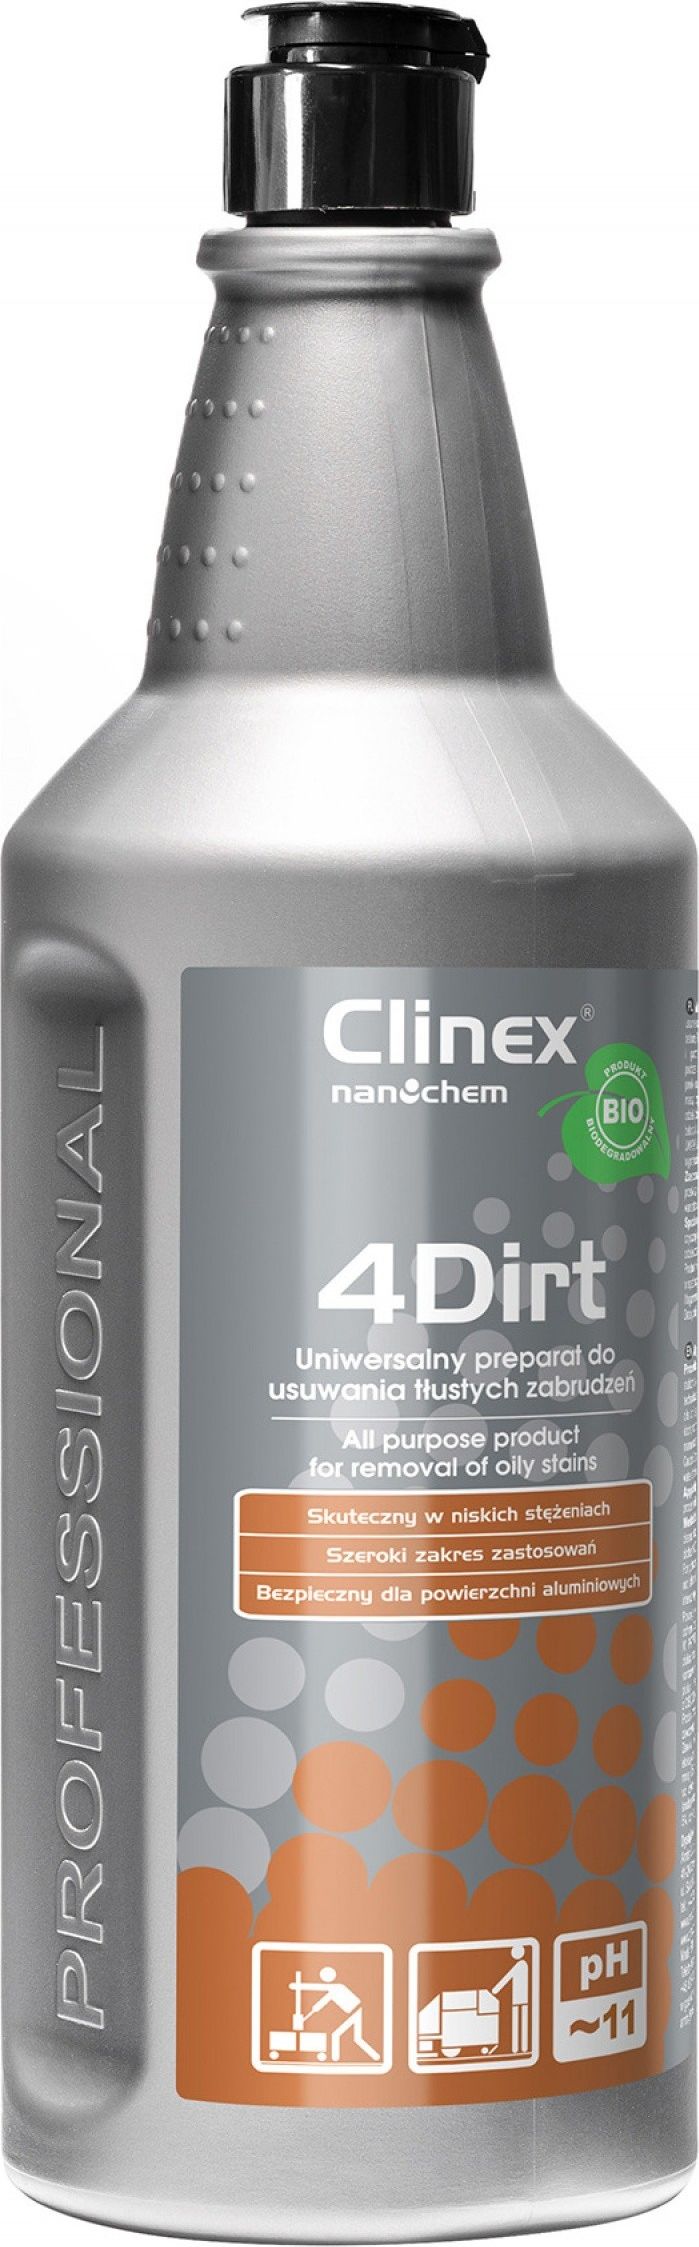 Clinex Preparat 4Dirt do usuwania tlustych zabrudzen 1 L 77-640 (5907513273196) Sadzīves ķīmija